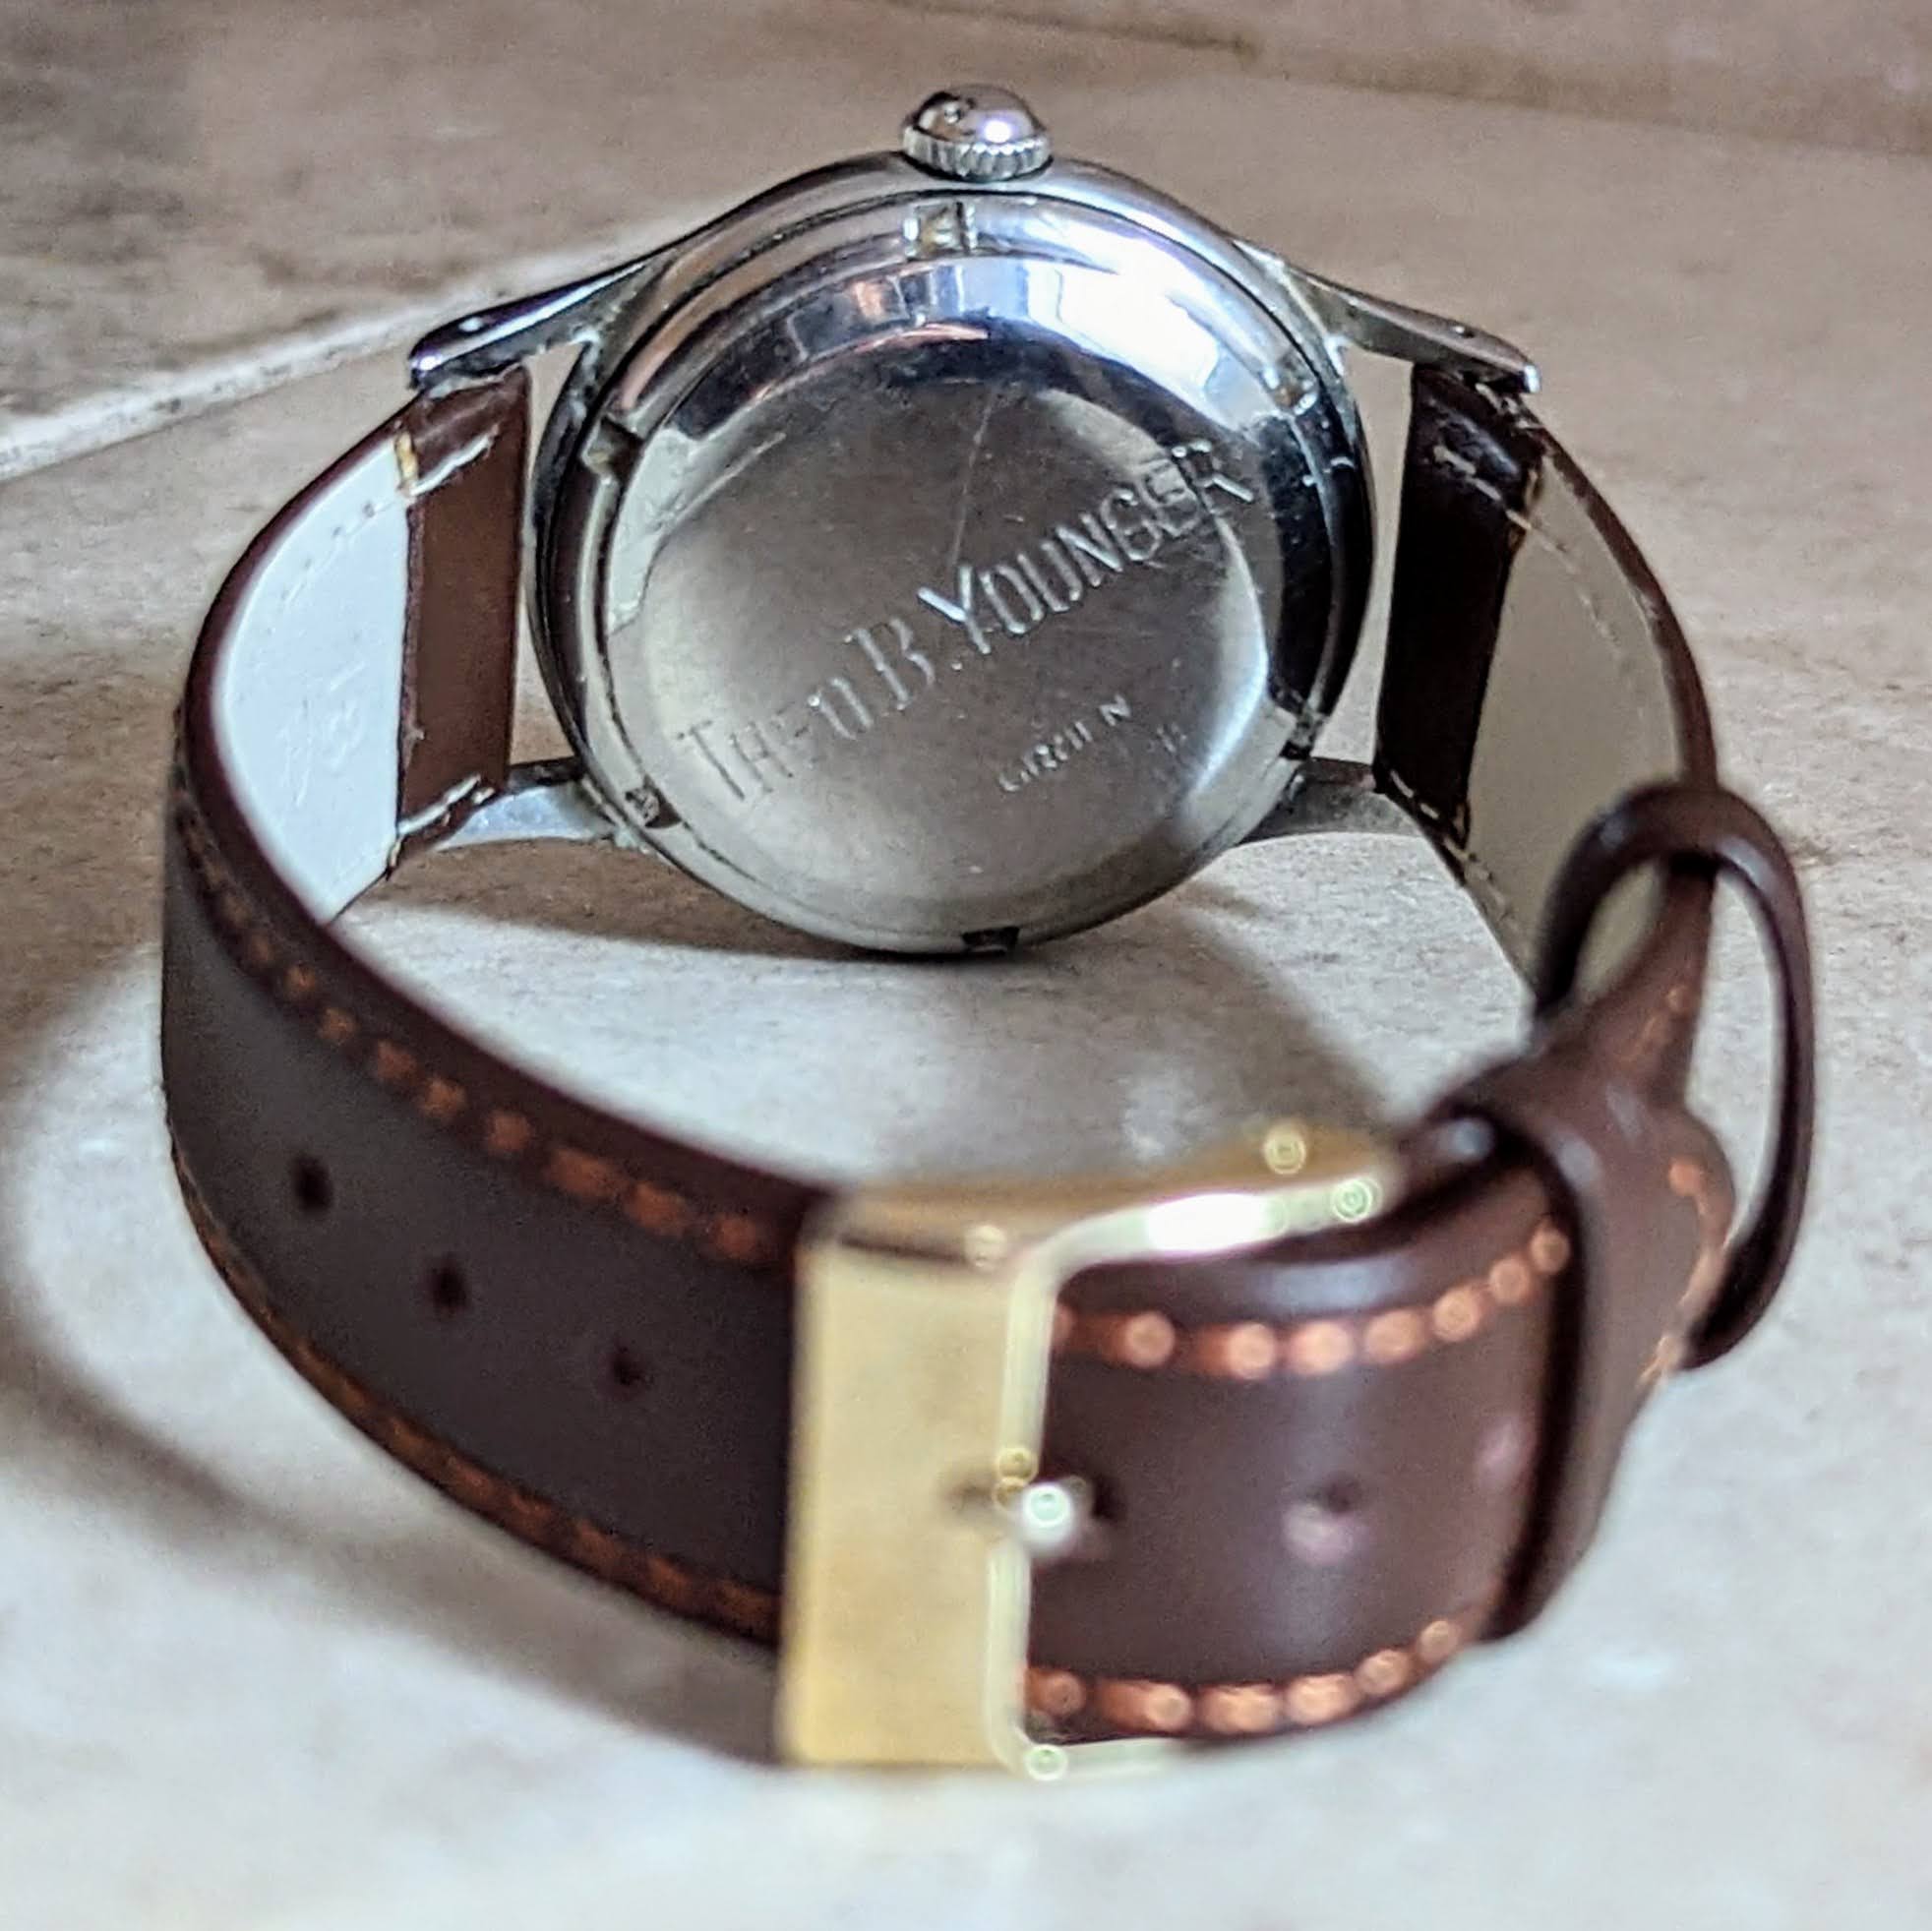 1947 GRUEN Precision Autowind Watch Bumper Vintage Wristwatch